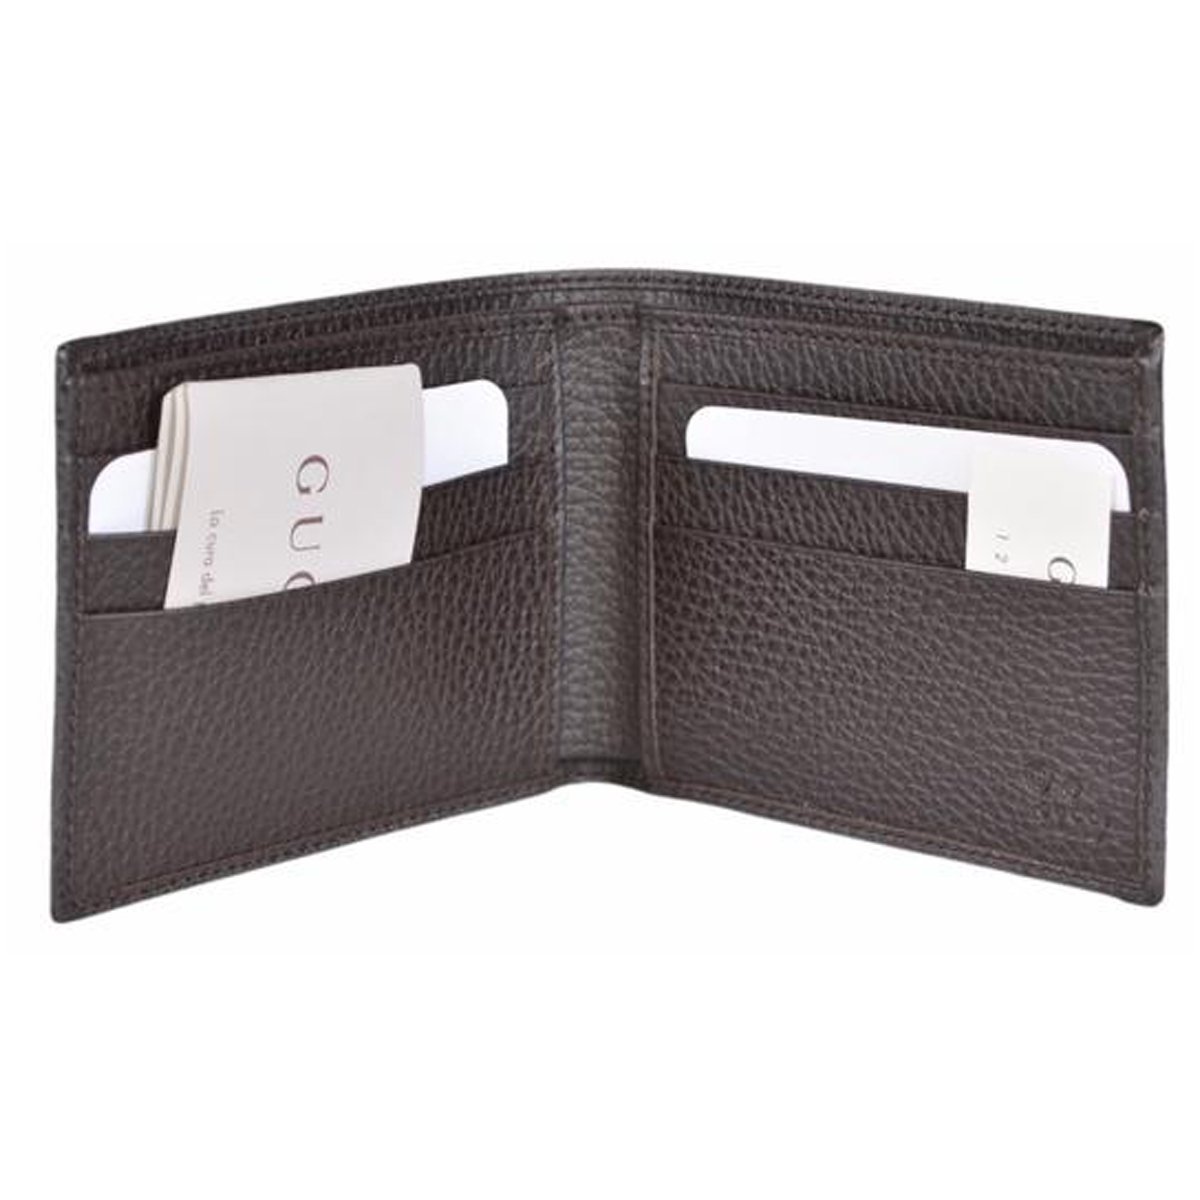 Gucci GG Canvas Brown/Beige Leather Bifold Wallet - LUXURYMRKT